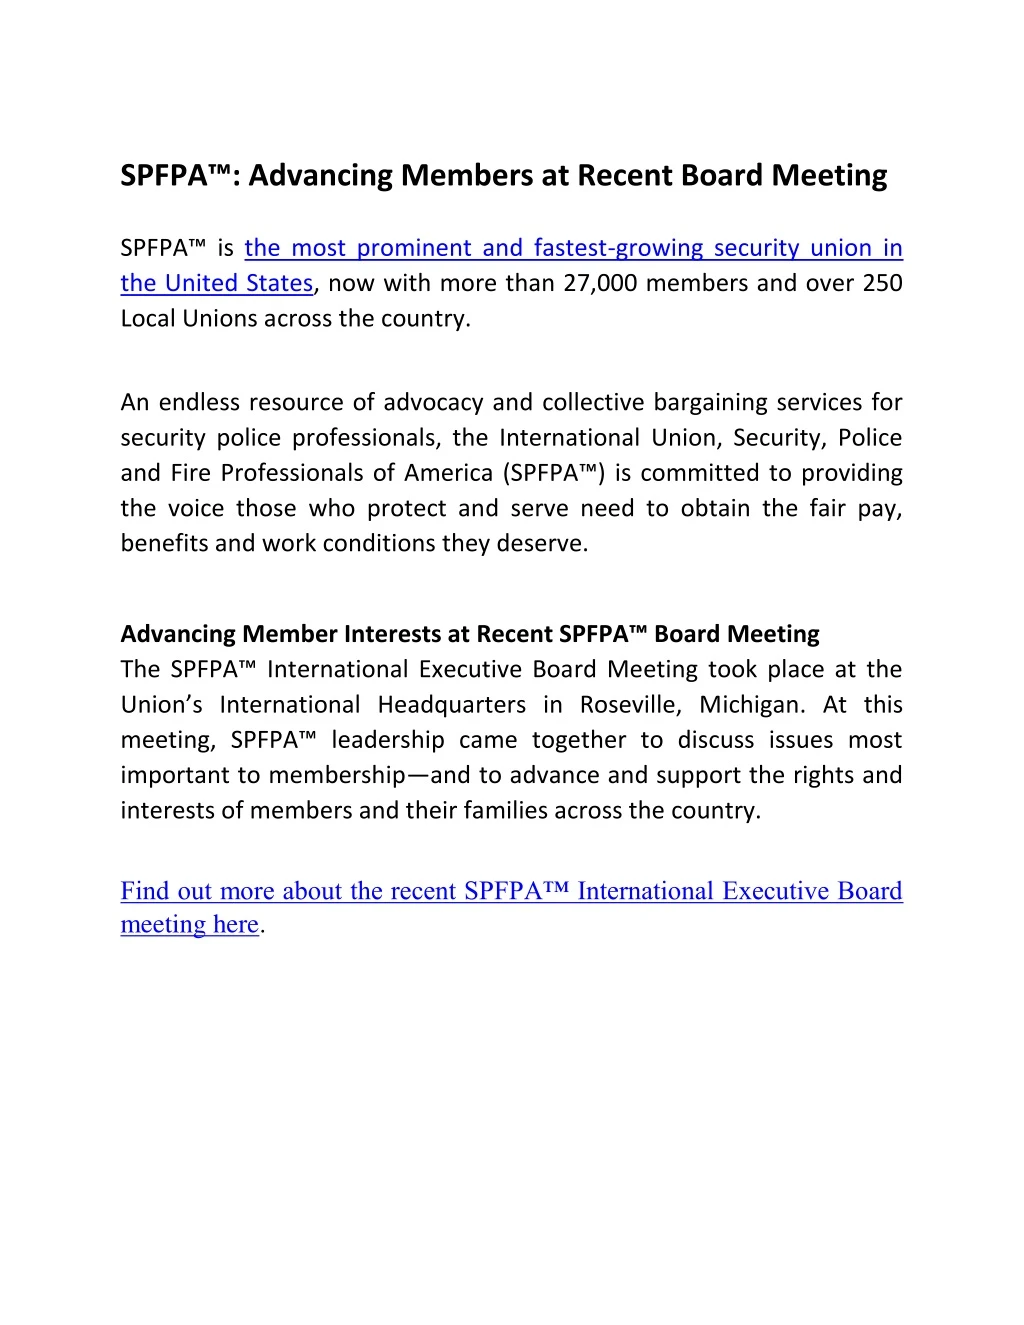 spfpa advancing members at recent board meeting